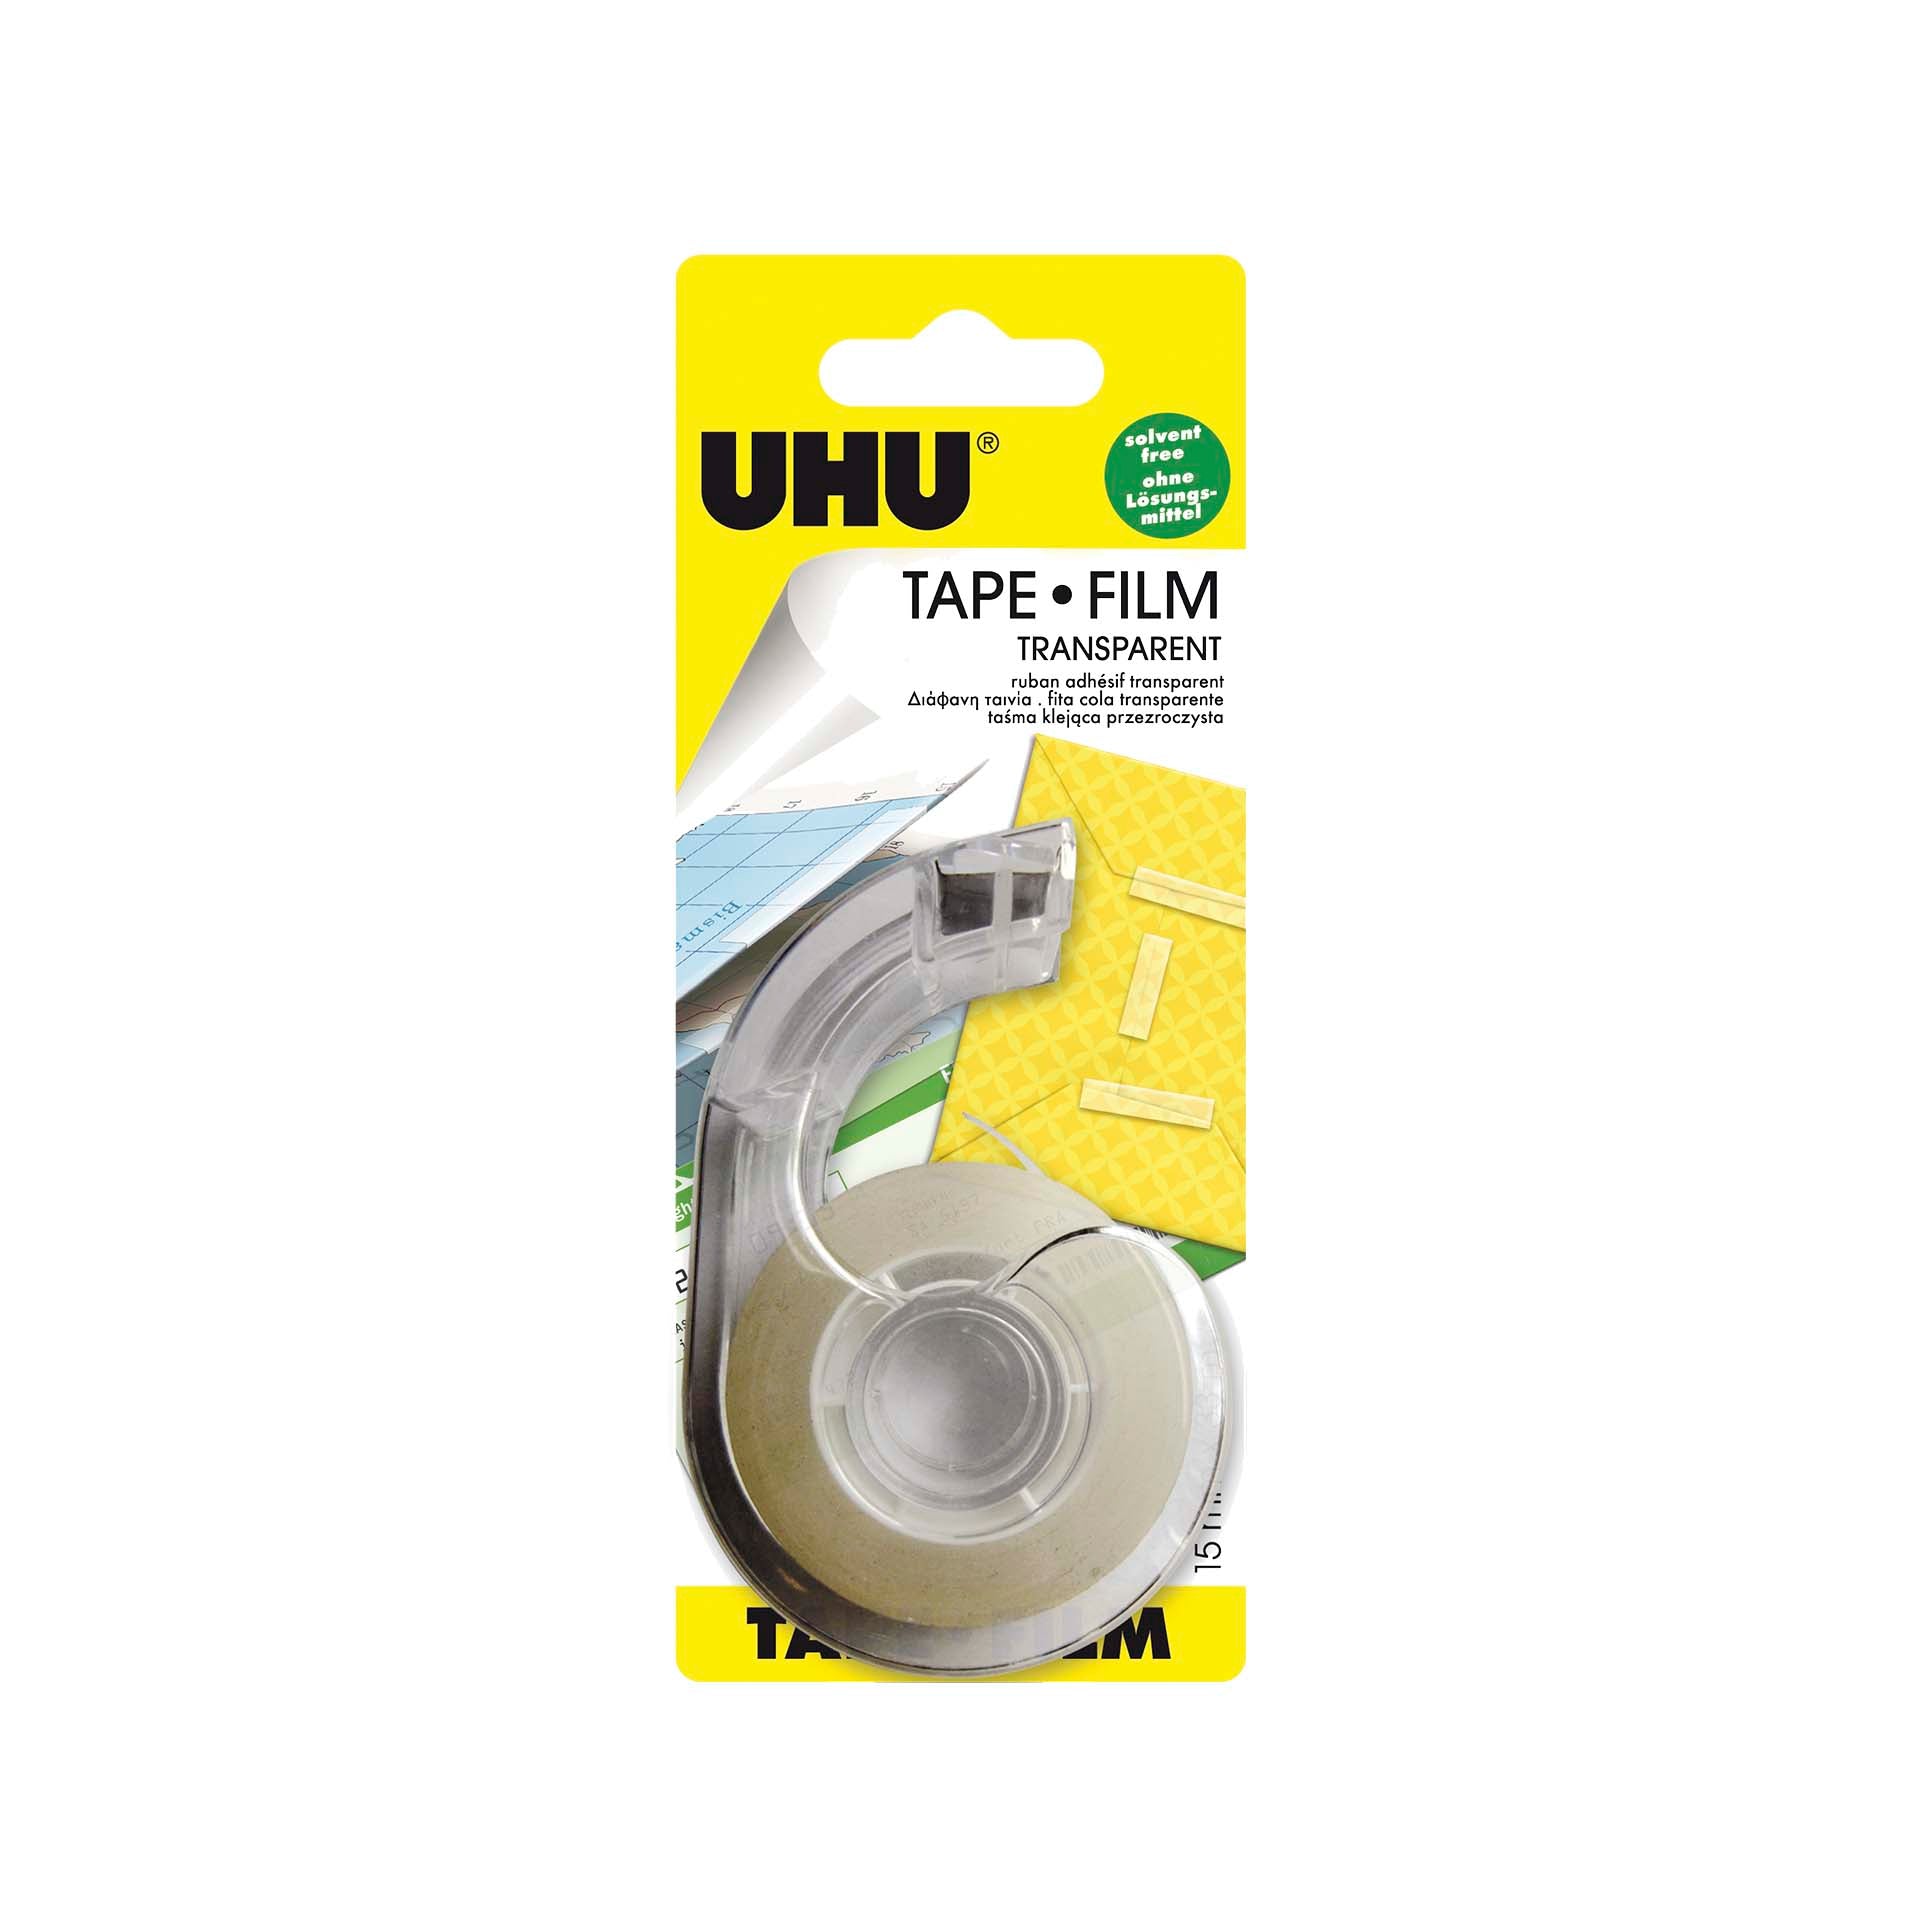 UHU Tape Film Transparente c/ Dispenser 15mm x 33m